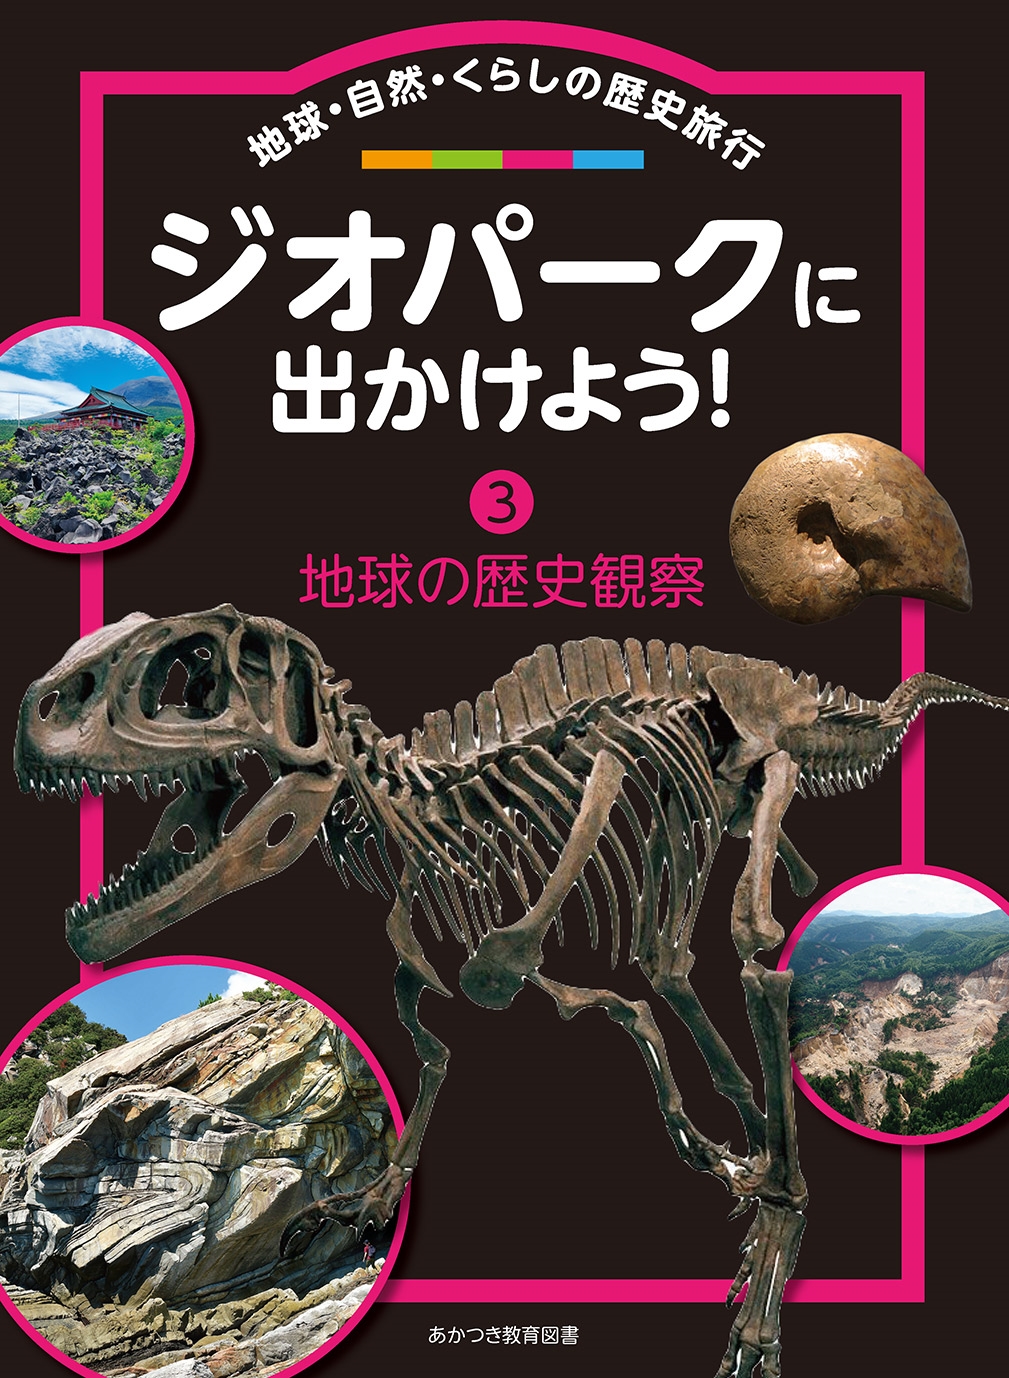 日本ジオパークネットワーク/ジオパークに出かけよう! (第3巻) 地球・自然・くらしの歴史旅行